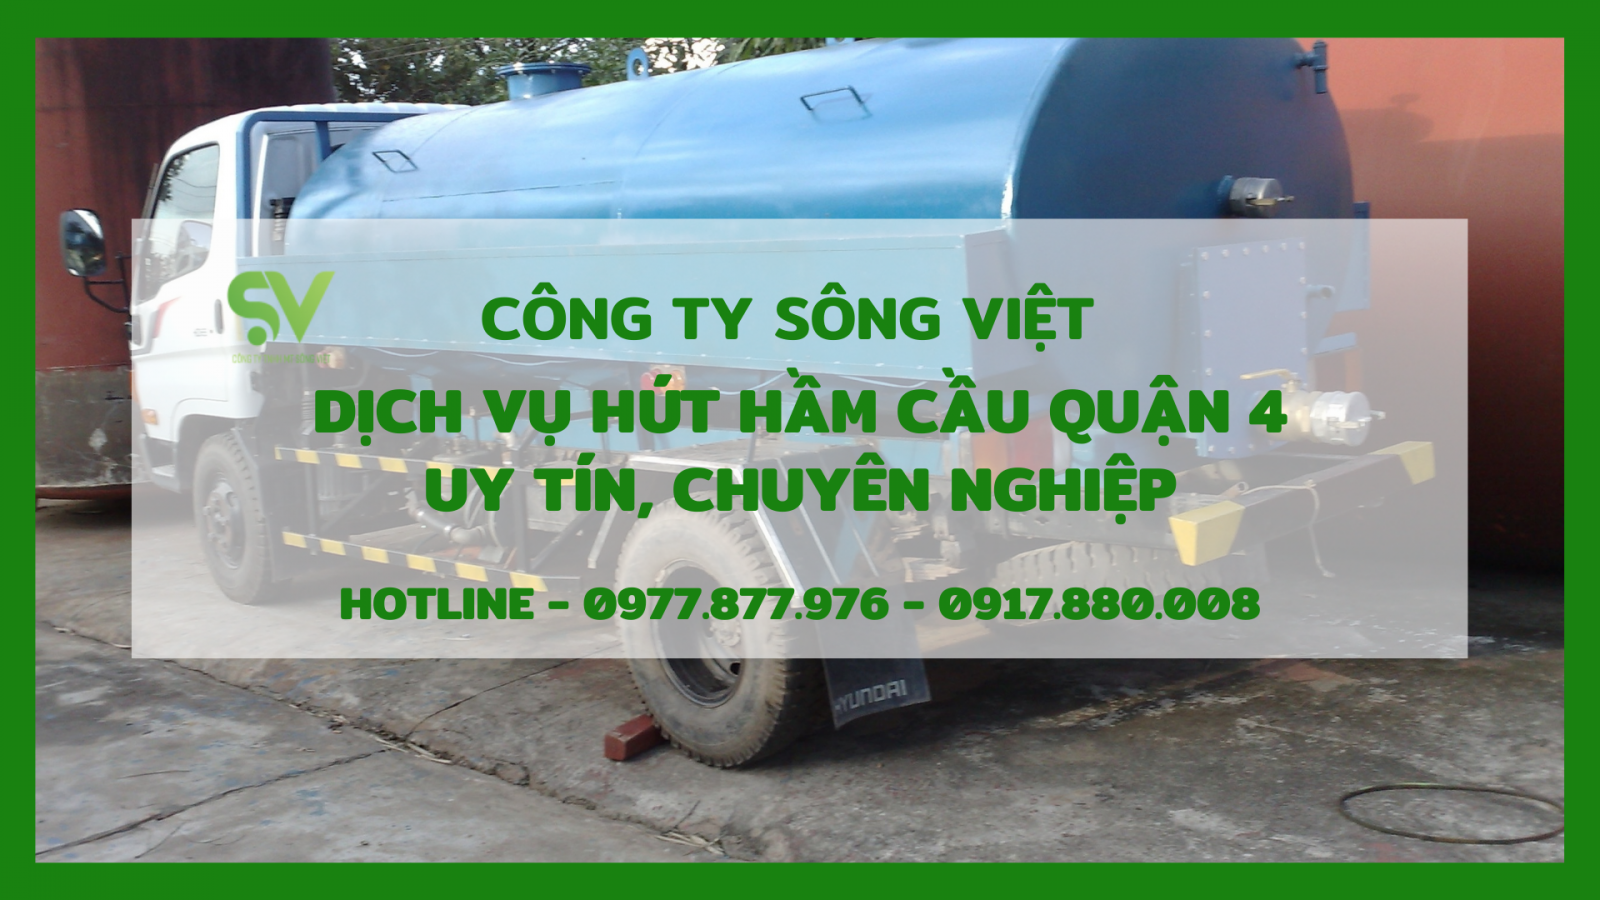 Dịch vụ hút hầm cầu quận 4 Sông Việt - Quy trình chuyên nghiệp